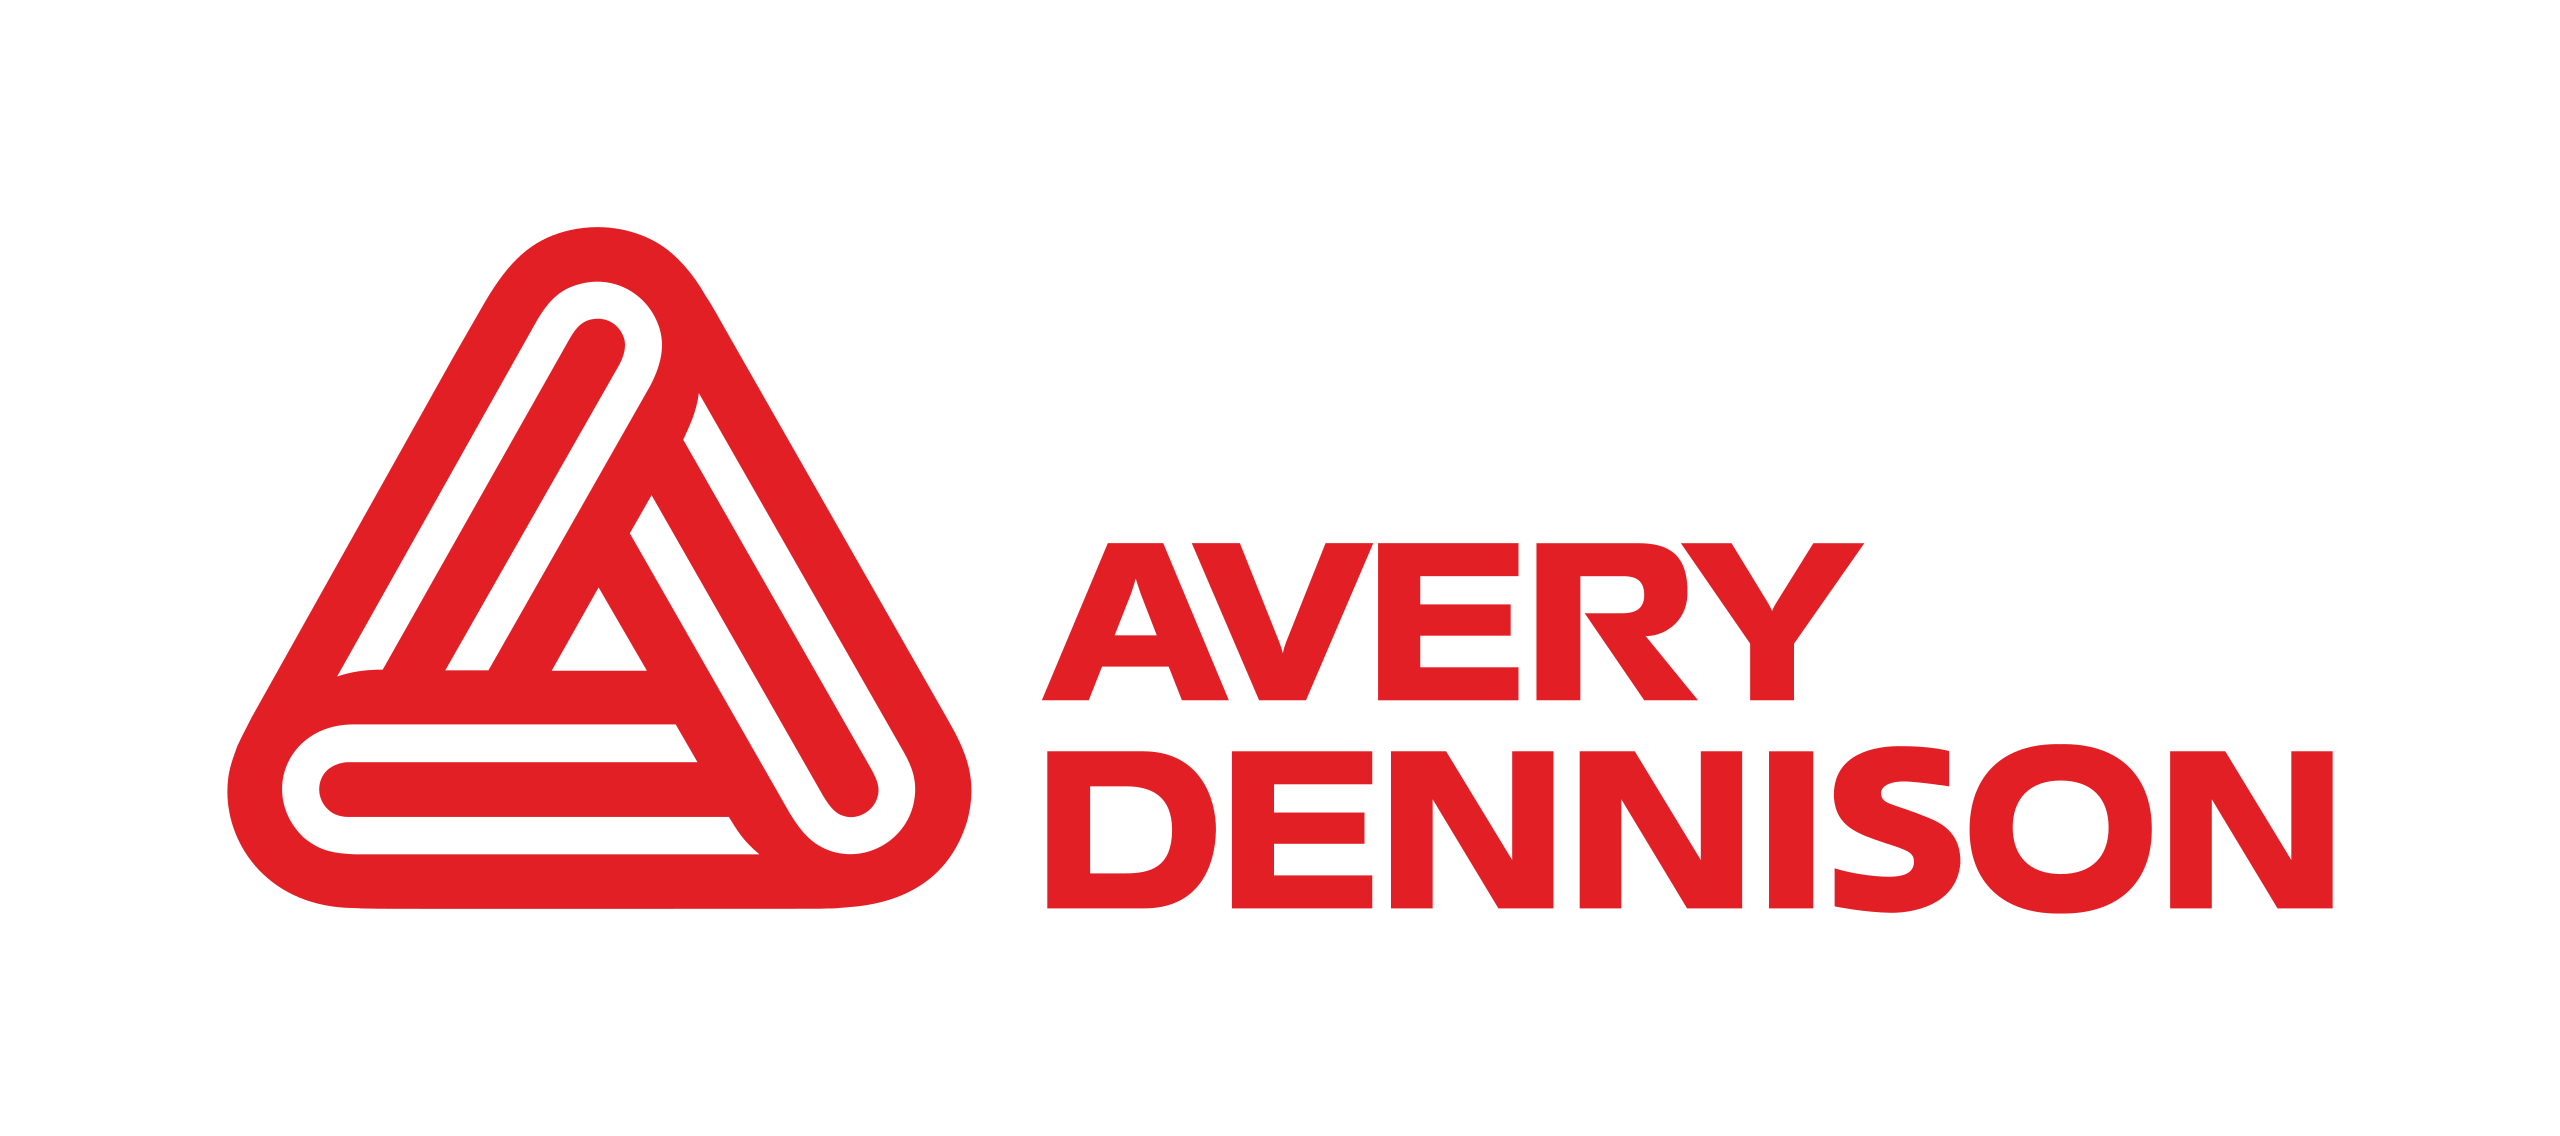 Avery denison barkod yazıcı modelleri ve özellikleri nelerdir? 